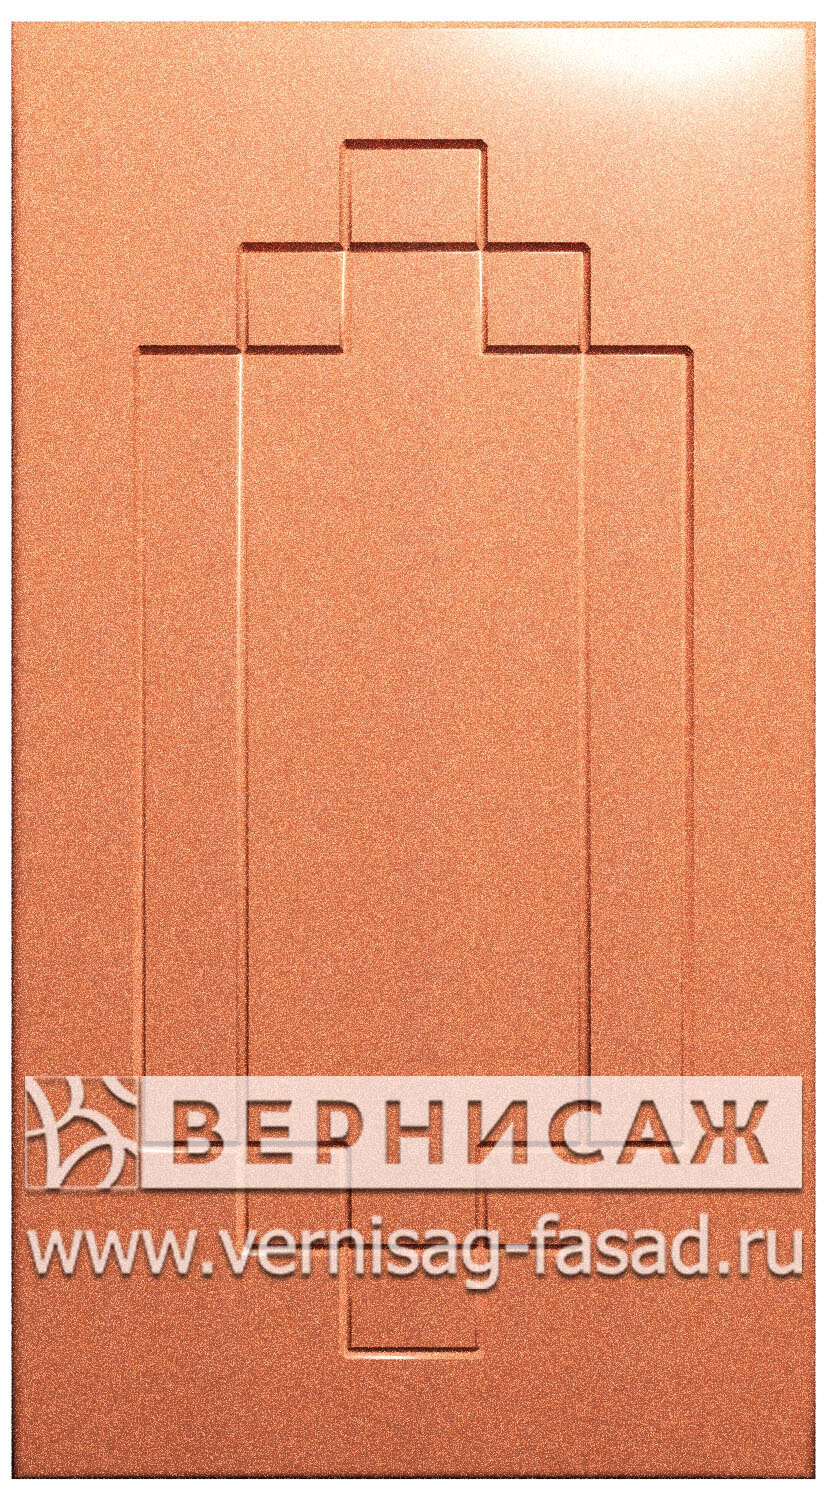  Фасады в пленке ПВХ, Фрезеровка № 37, цвет Оранжевый металлик